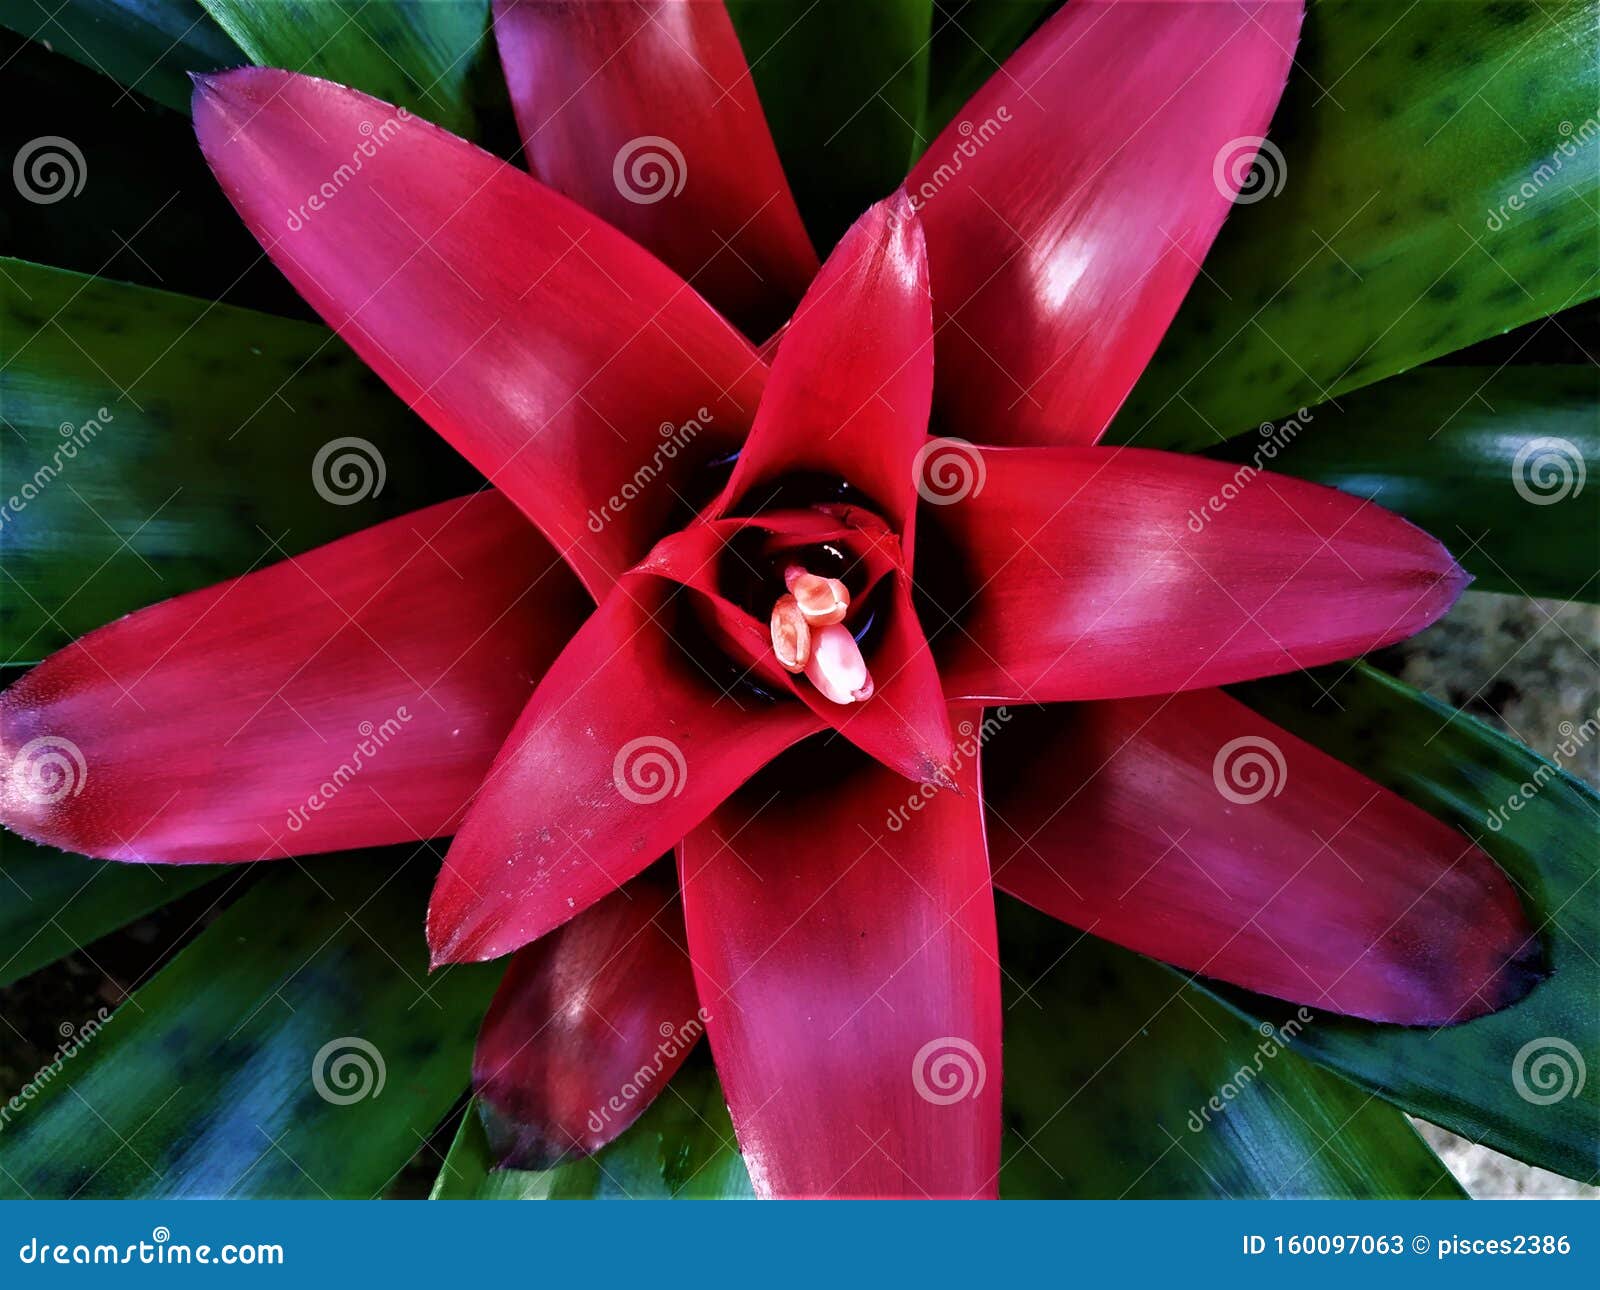 CorazÃ³n Rojo De Bromelias Con PequeÃ±as Flores Imagen de archivo - Imagen  de vides, fondo: 160097063